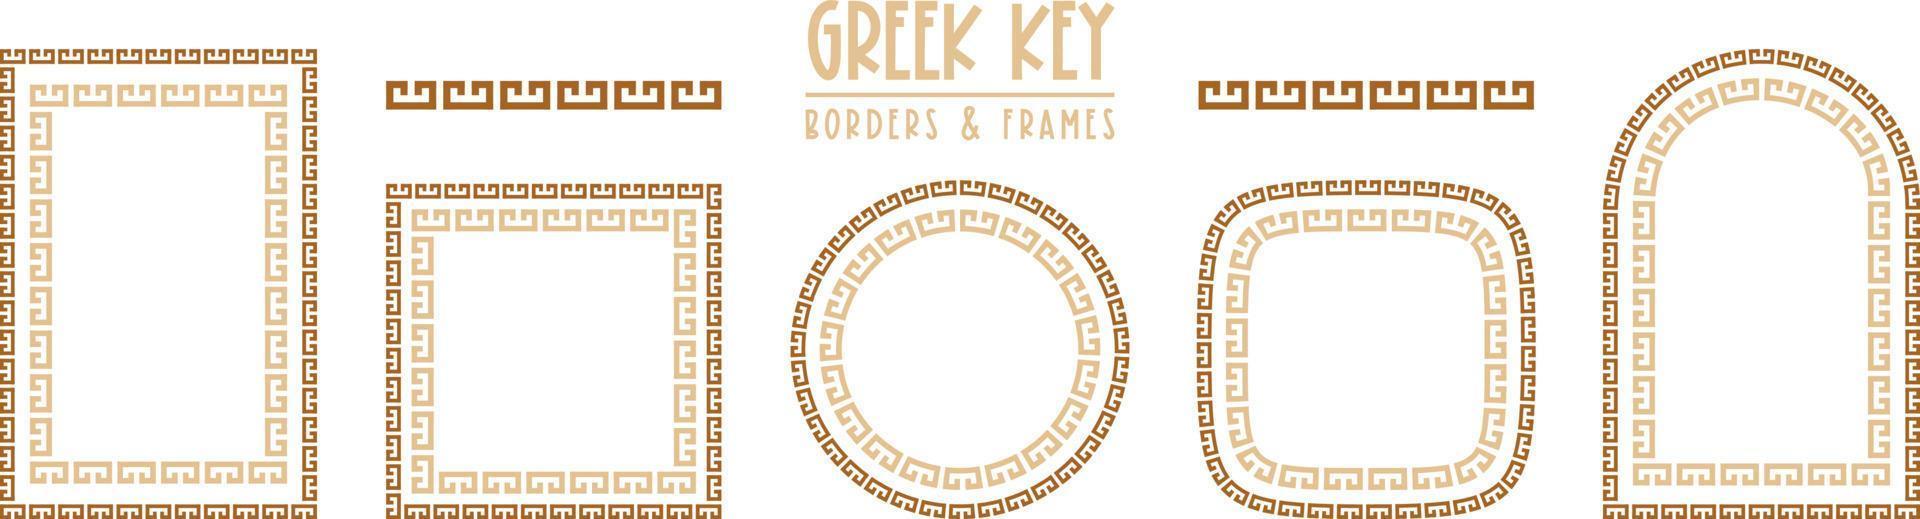 Griekse sleutelframes en randen collectie. decoratieve oude meander vector